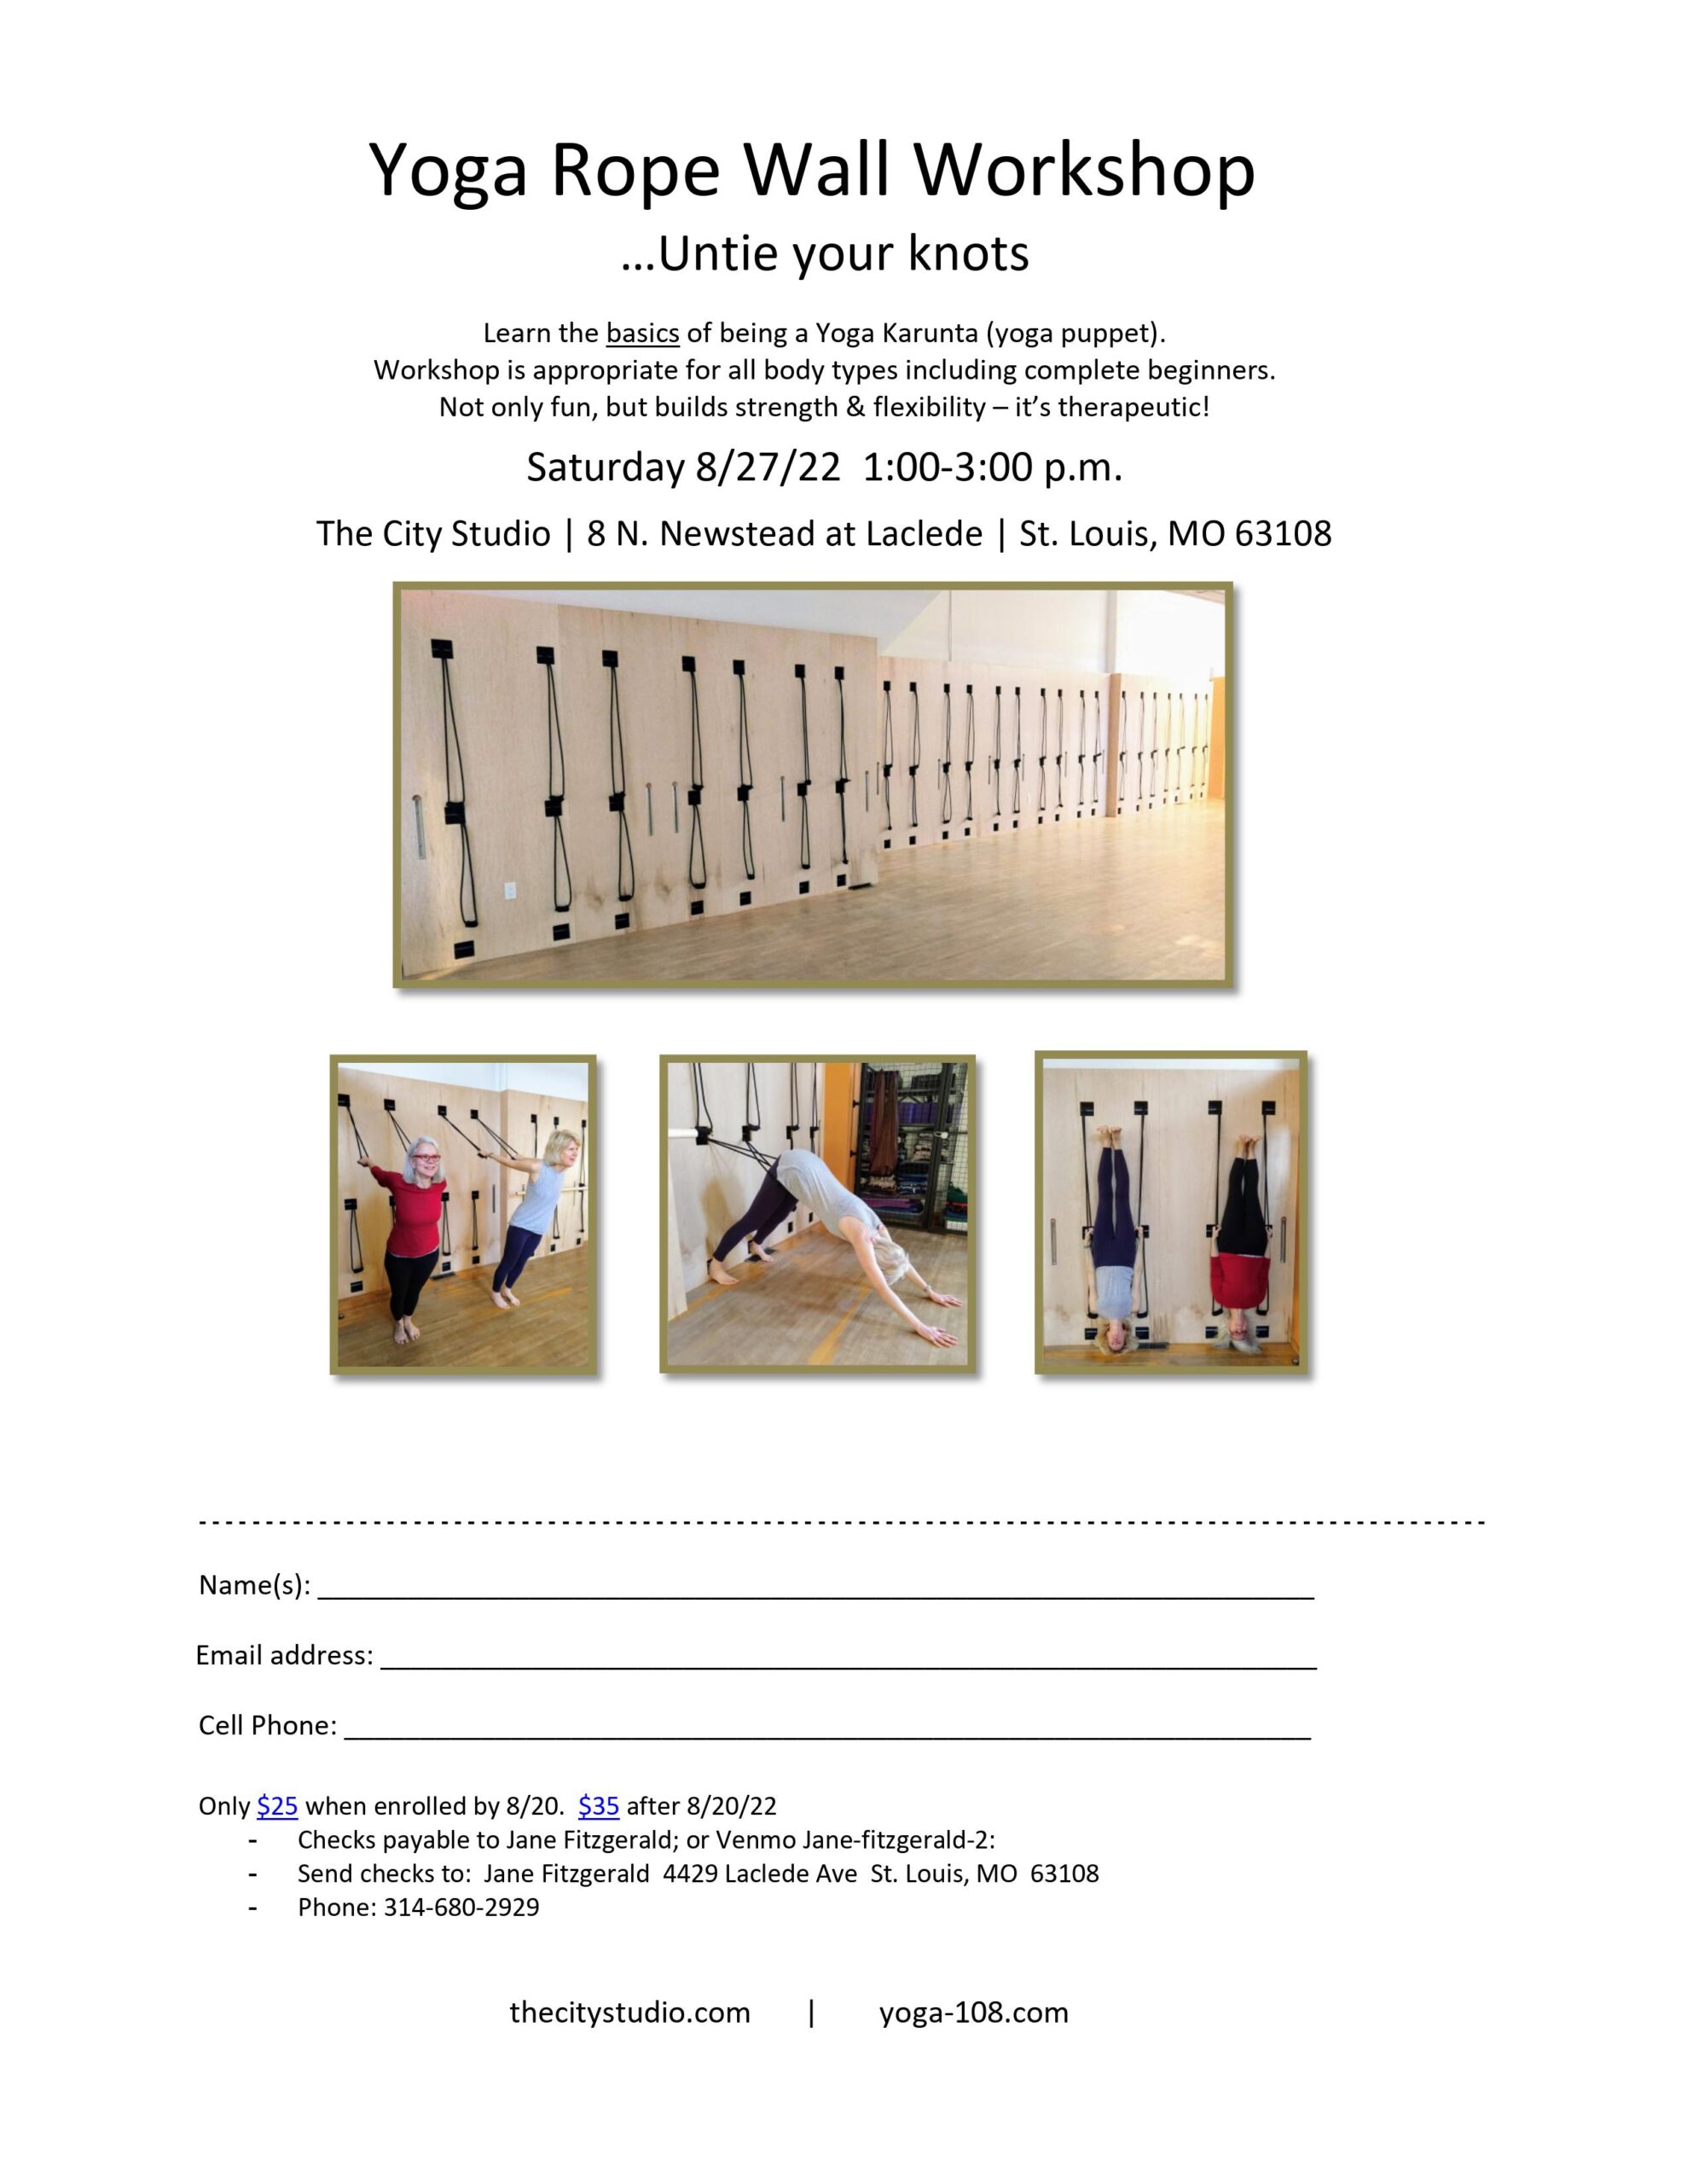 Yoga Rope Wall Workshop 8-27-22